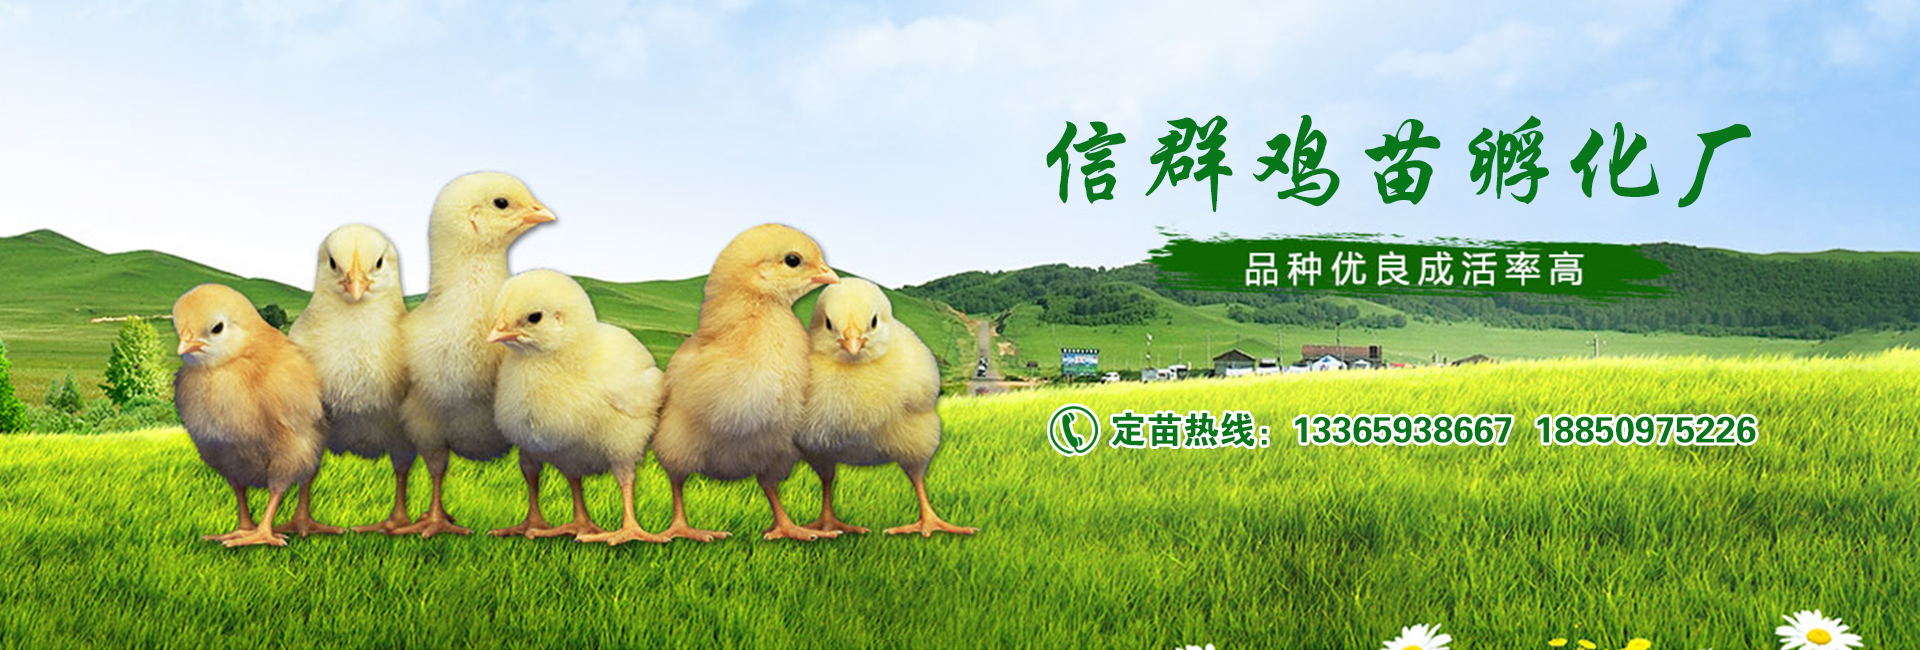 飼料添加劑對禽類的影響